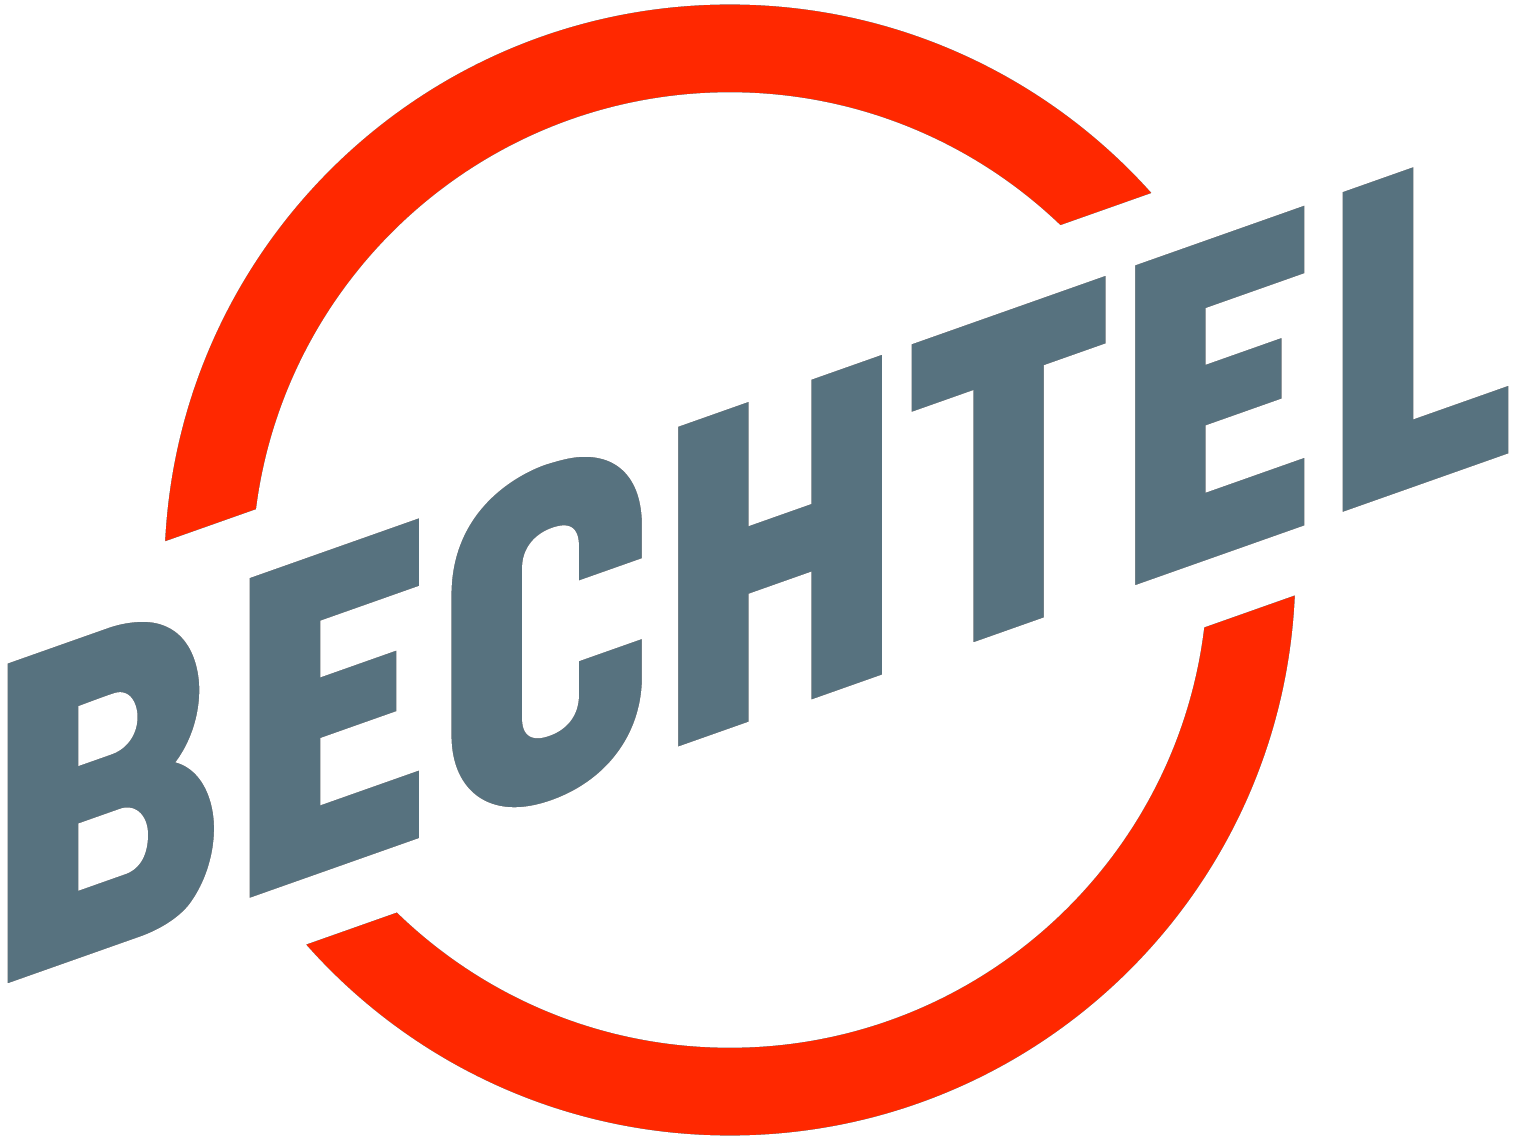 Bechtel Logo